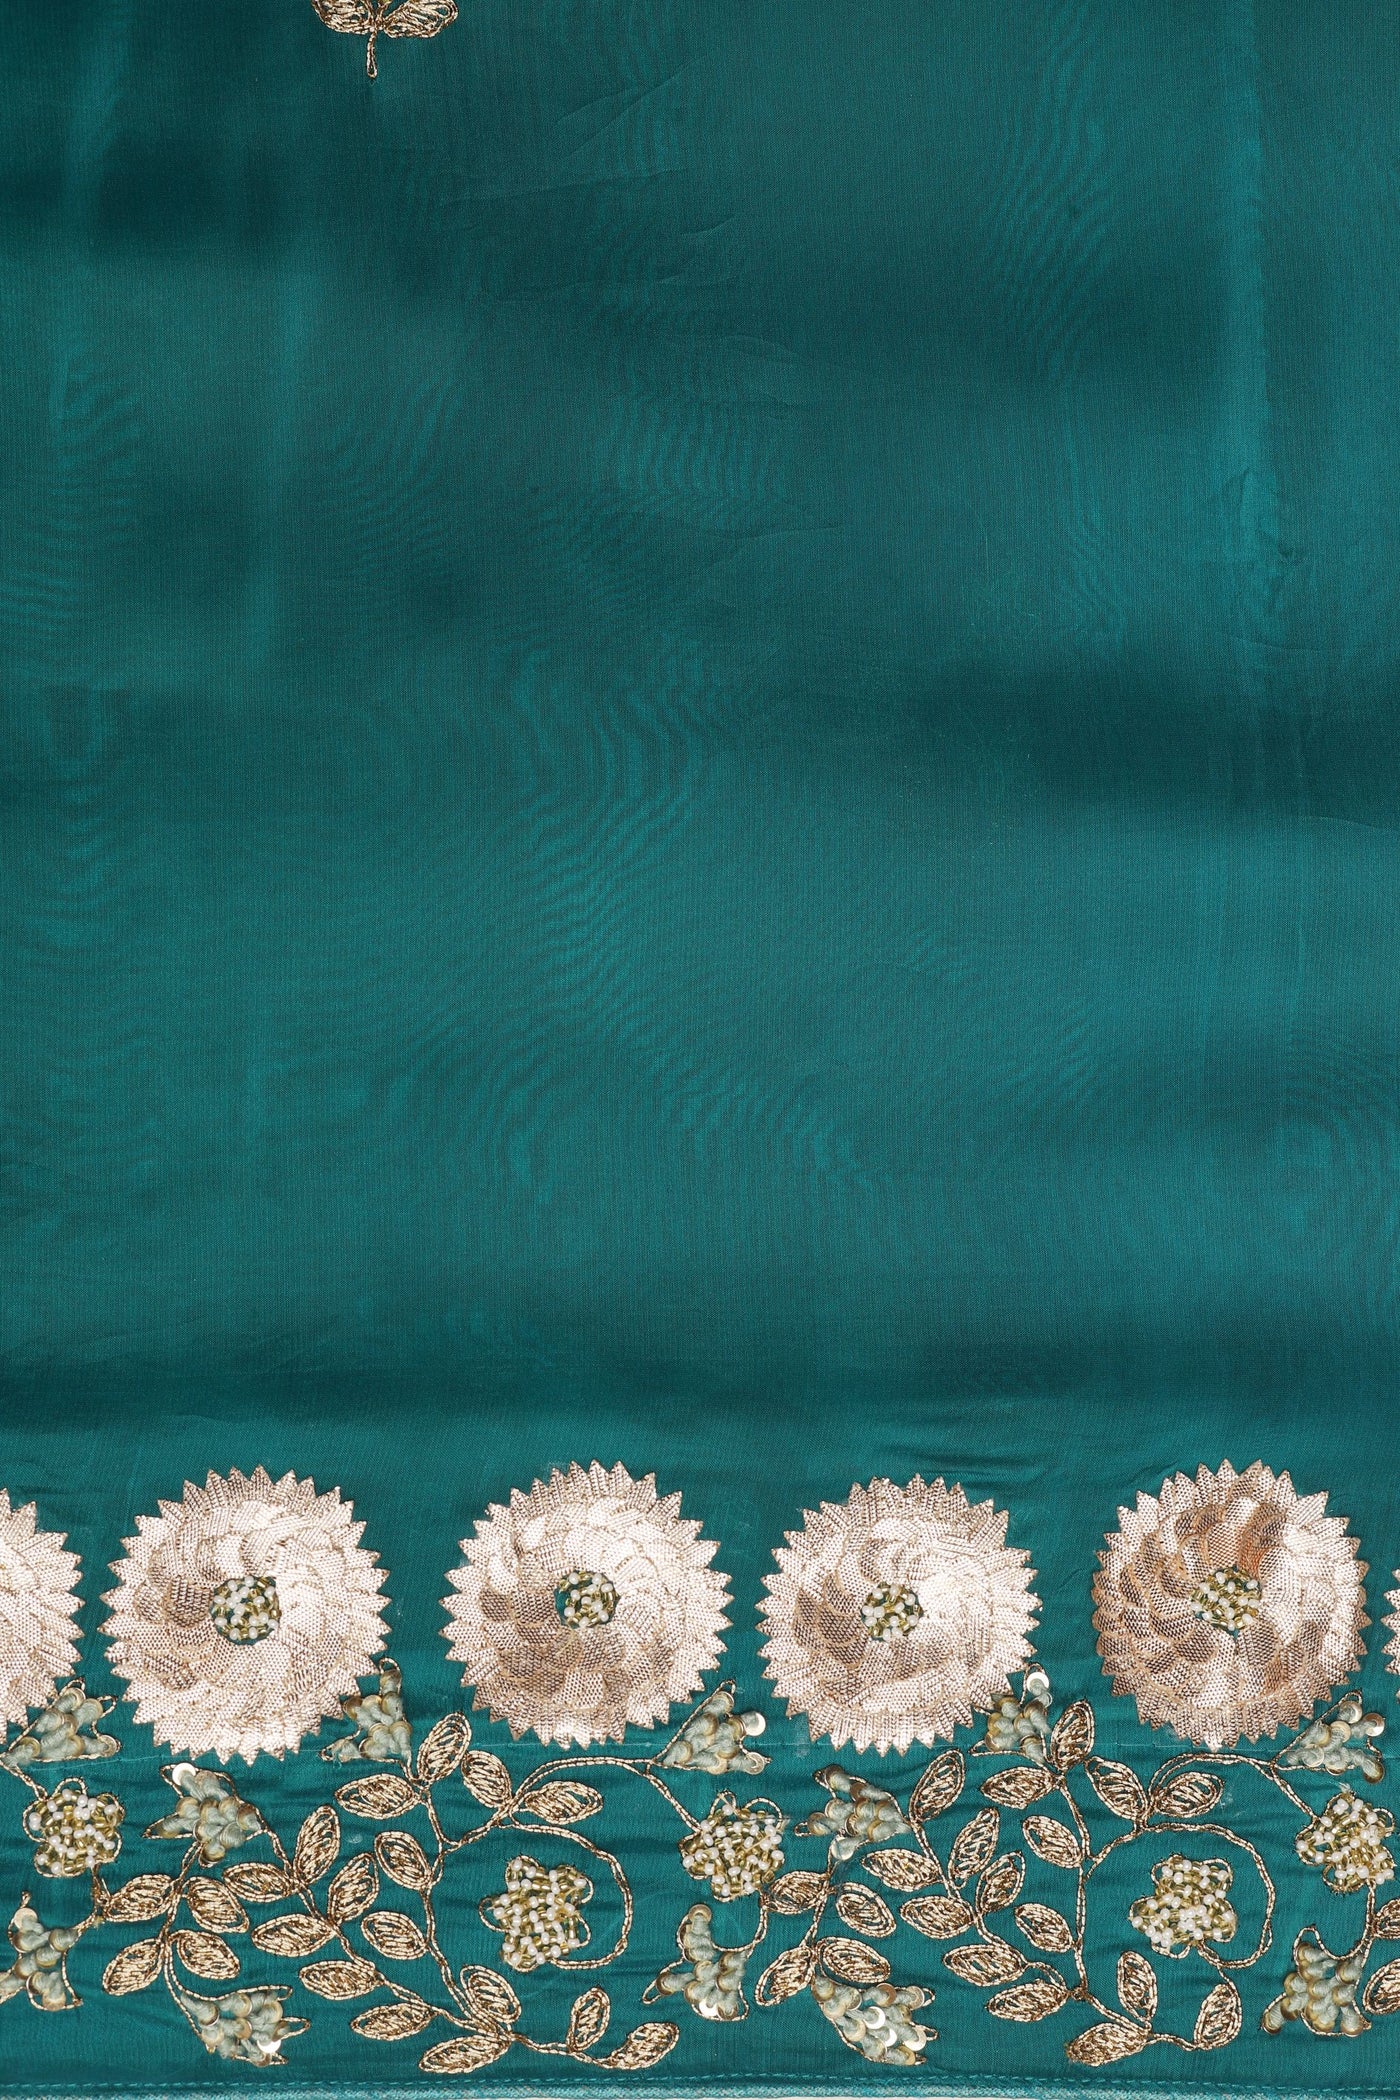 Enchanting Emerald Silk Saree: A Jewel of Elegance